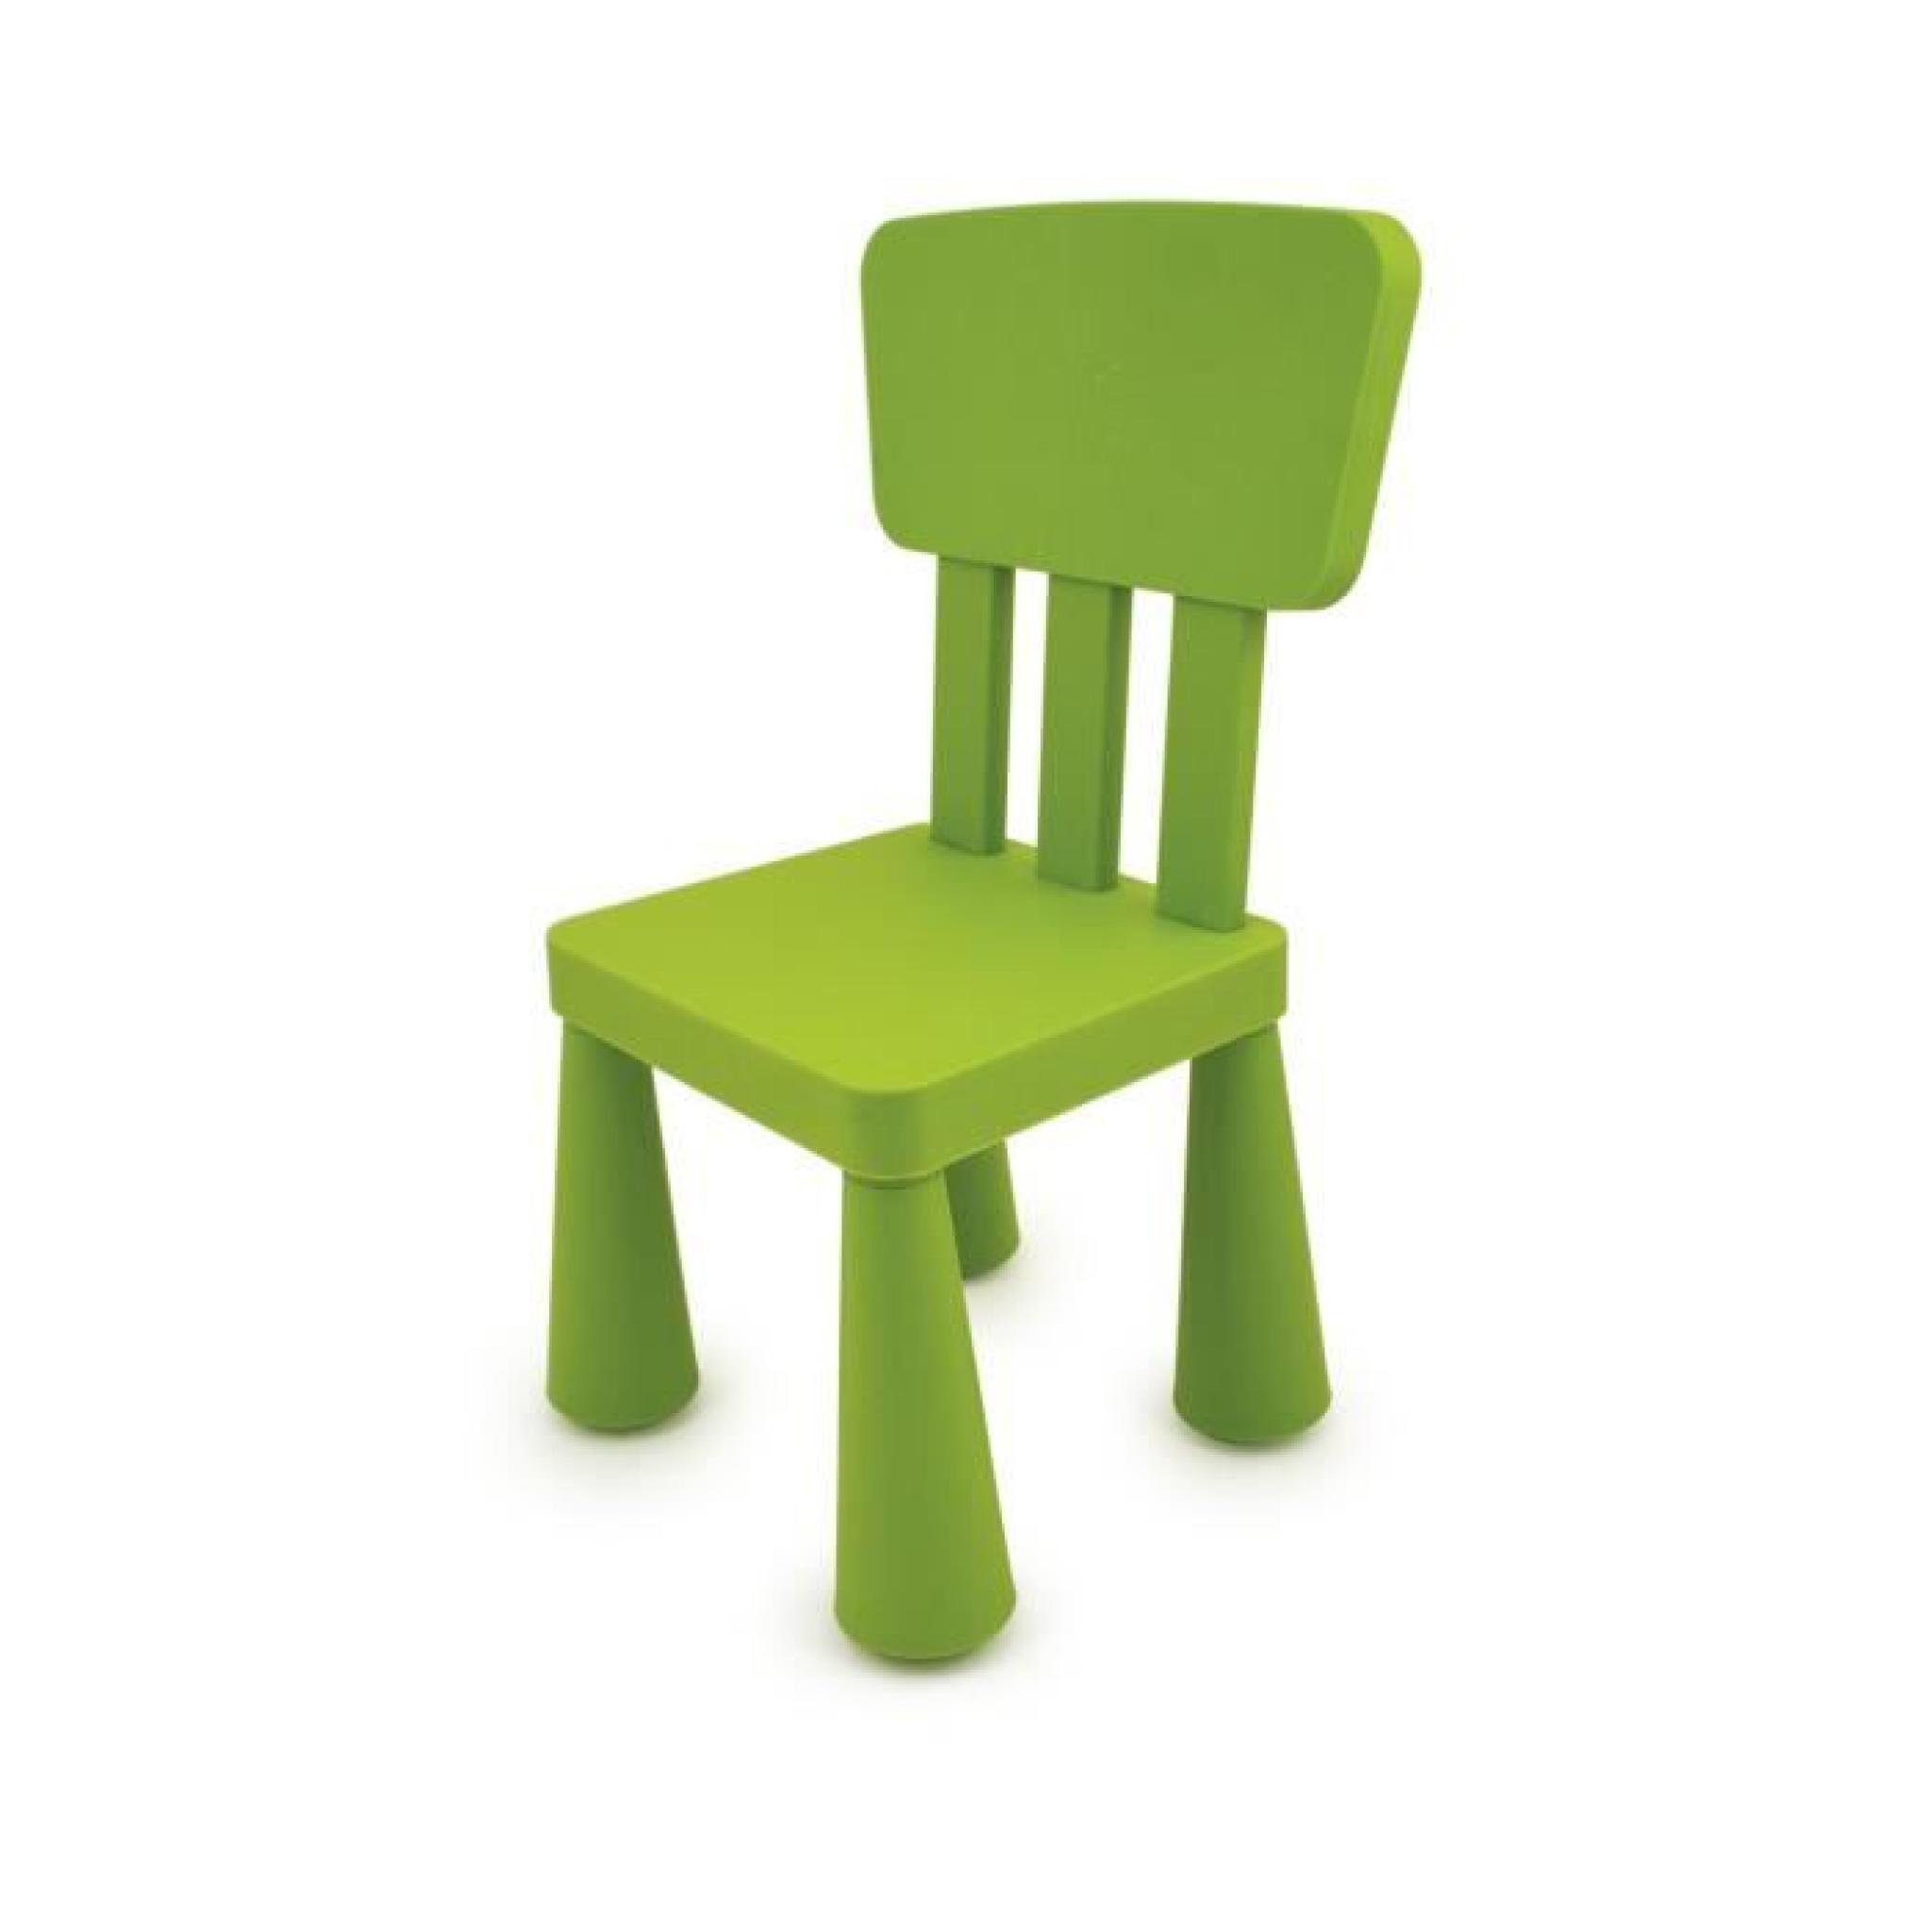 Chaise carrée en plastique - enfant - disponible en bleu/vert/rouge/jaune